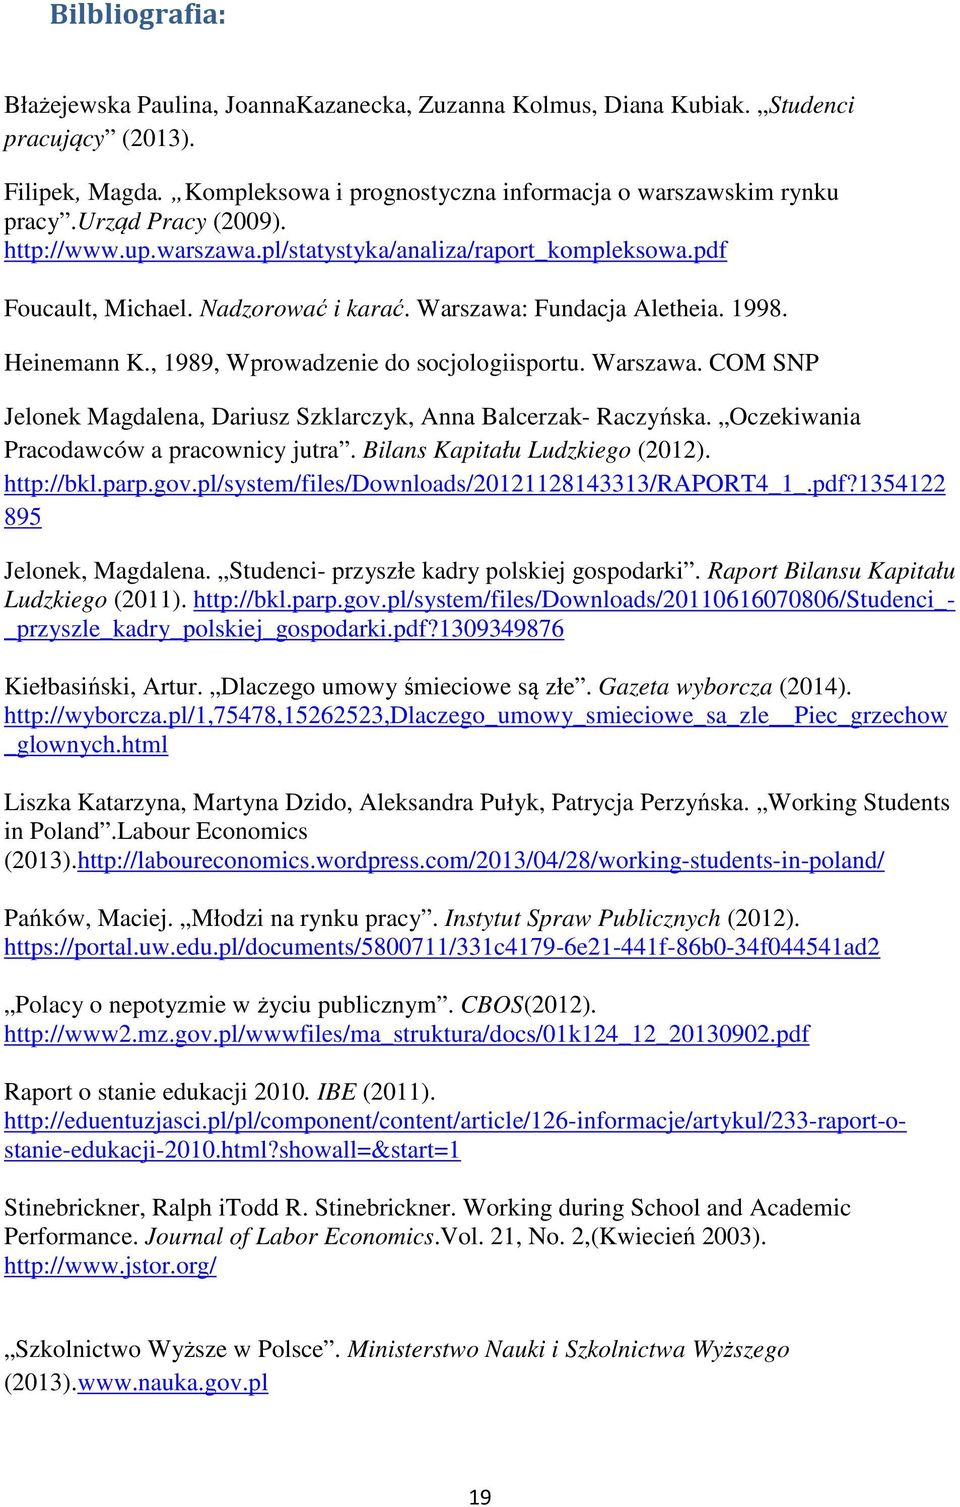 , 1989, Wprowadzenie do socjologiisportu. Warszawa. COM SNP Jelonek Magdalena, Dariusz Szklarczyk, Anna Balcerzak- Raczyńska. Oczekiwania Pracodawców a pracownicy jutra.